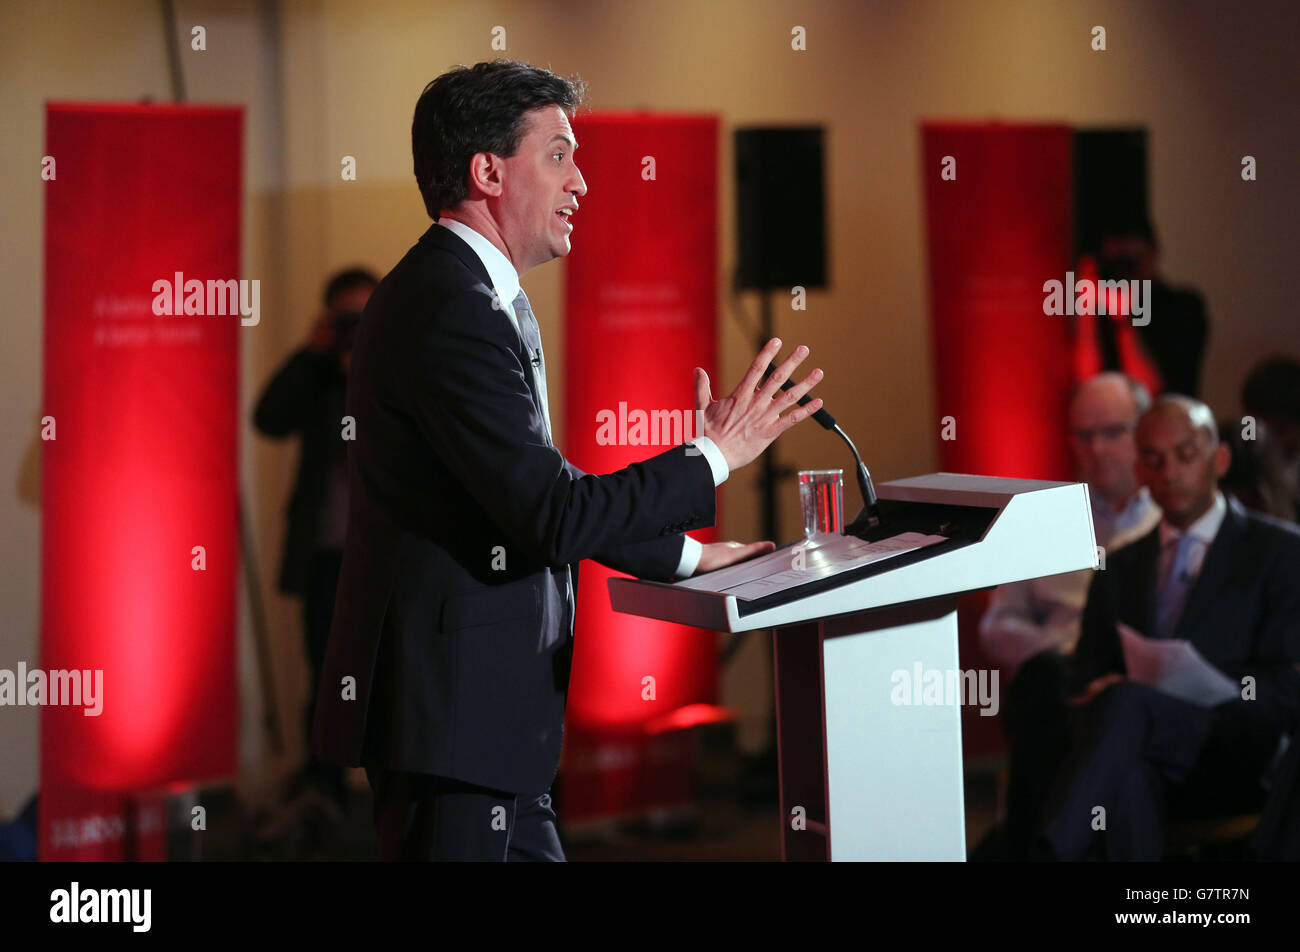 Der Gewerkschaftsführer Ed Miliband spricht während einer Pressekonferenz in London, als die Partei ihr Bildungsmanifest mit der Zusage lancierte, allen Teenagern persönliche Ratschläge zu geben, um zu verhindern, dass ihnen Türen "verschlossen" werden, während sie sich auf die Arbeit vorbereiten. Stockfoto